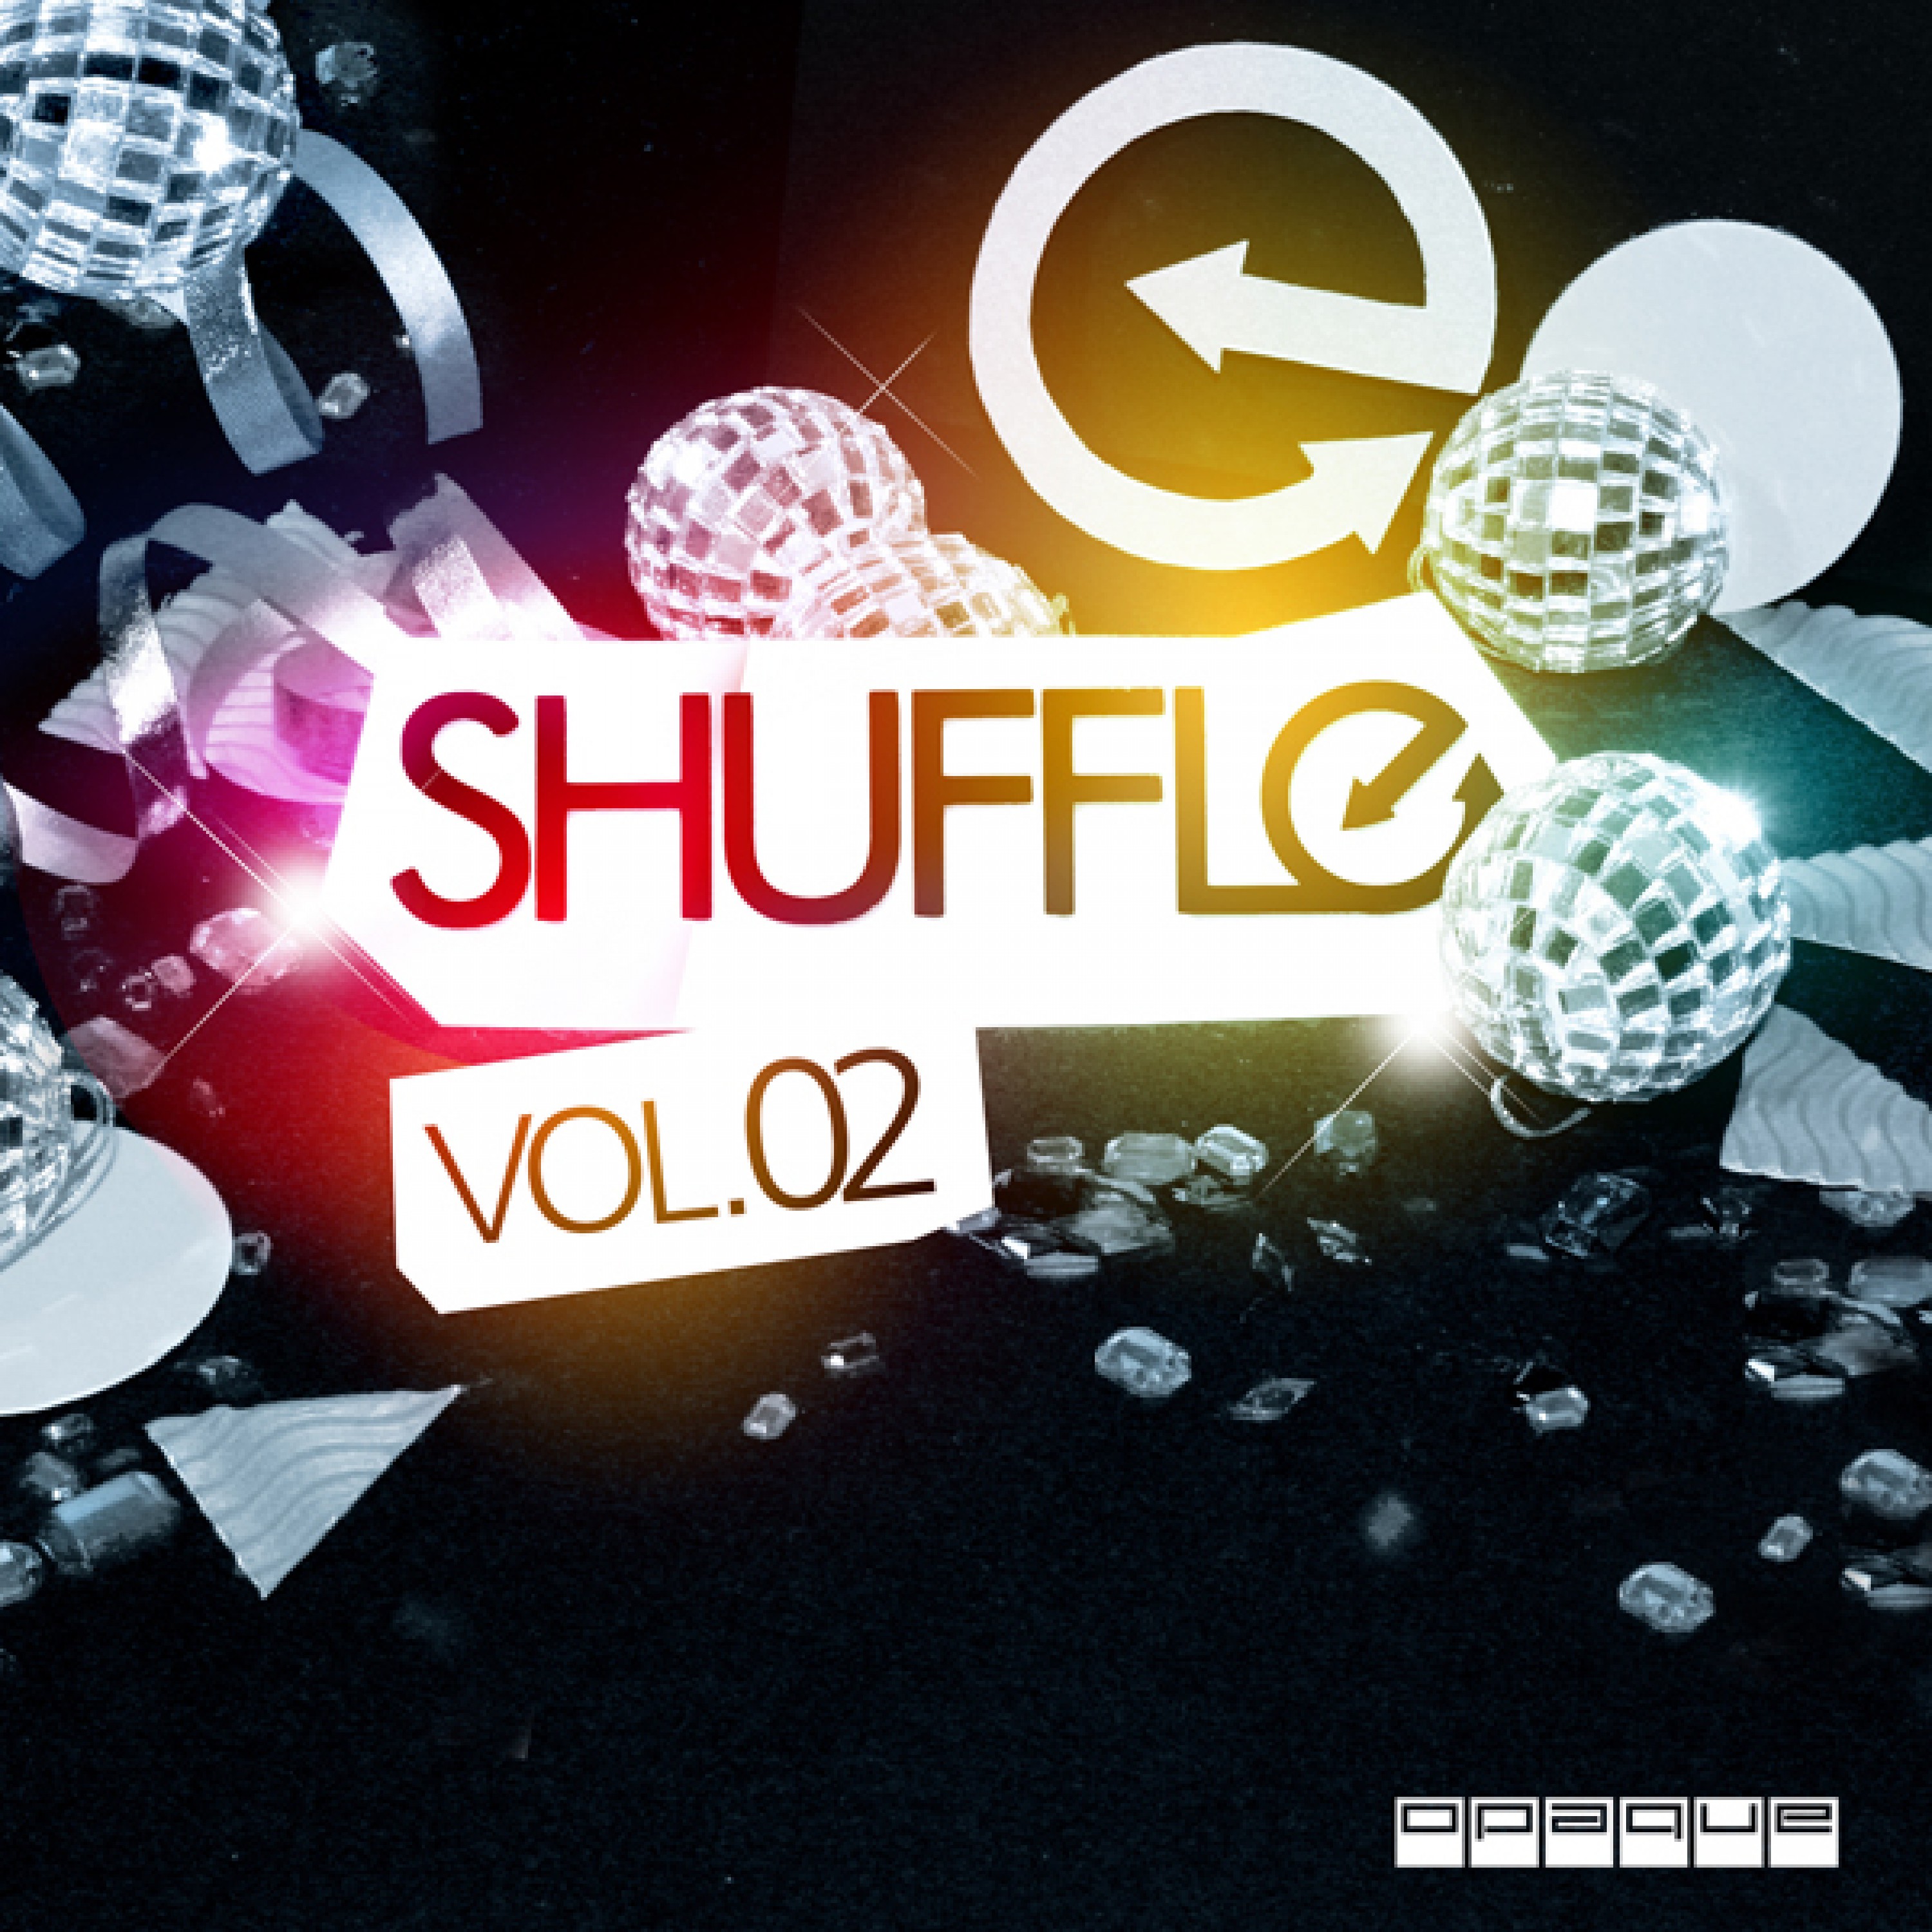 Shuffle Vol. 02